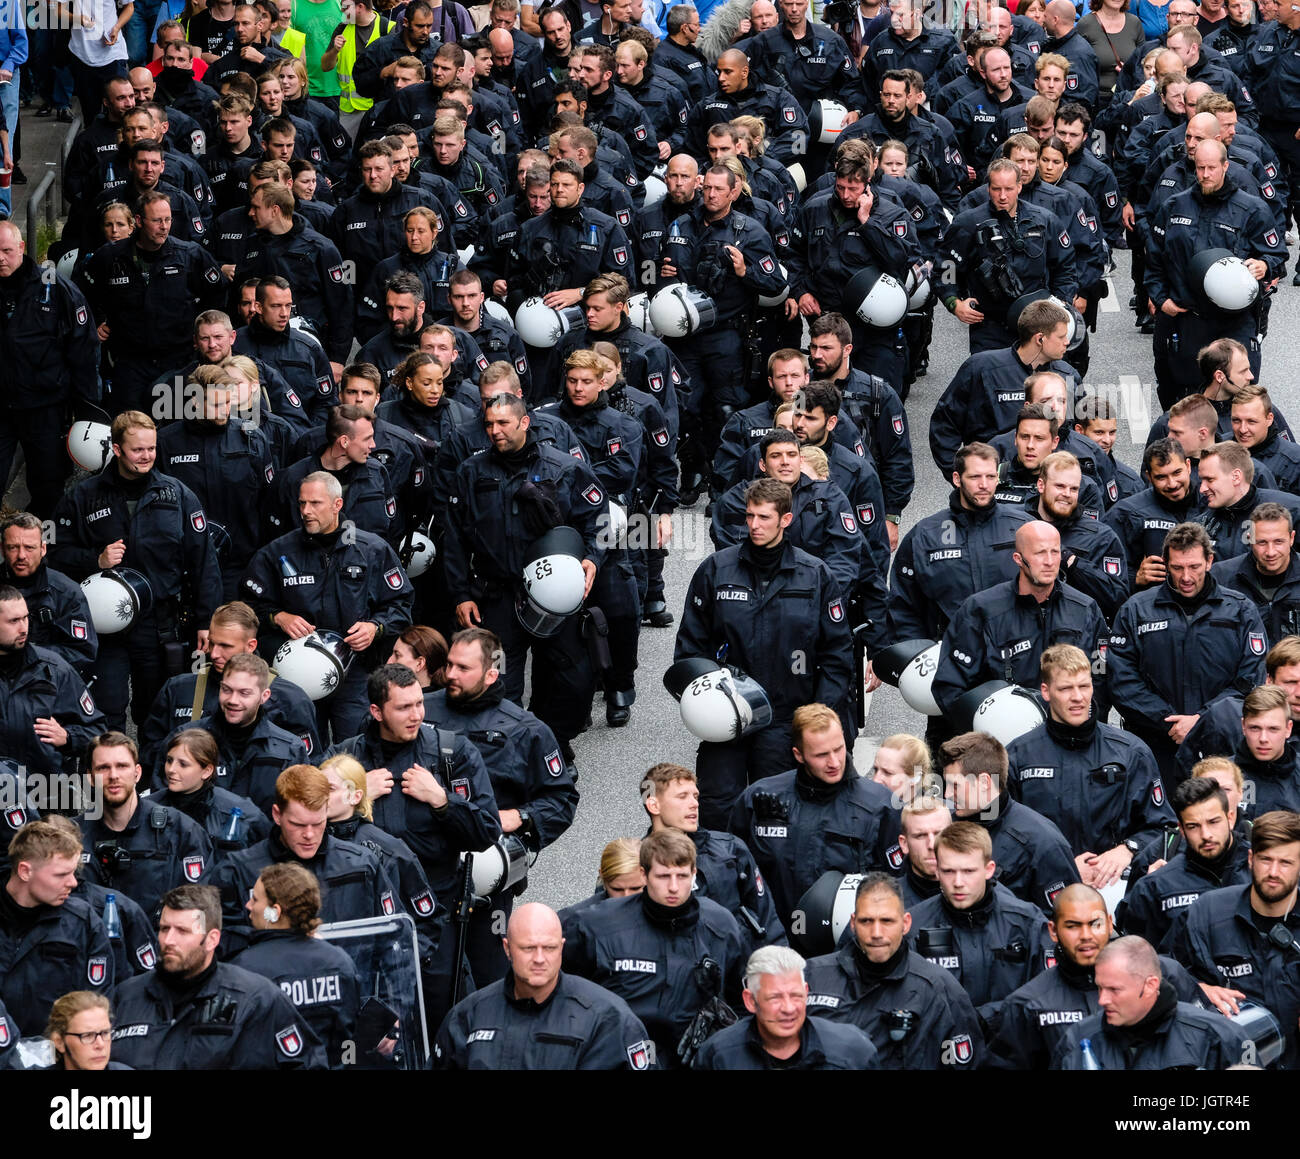 8 Luglio, 2017. Ad Amburgo in Germania. grande manifestazione marzo attraverso il centro di Amburgo per protestare contro il vertice del G20 in città. Qui grande gruppo di forze di polizia Foto Stock